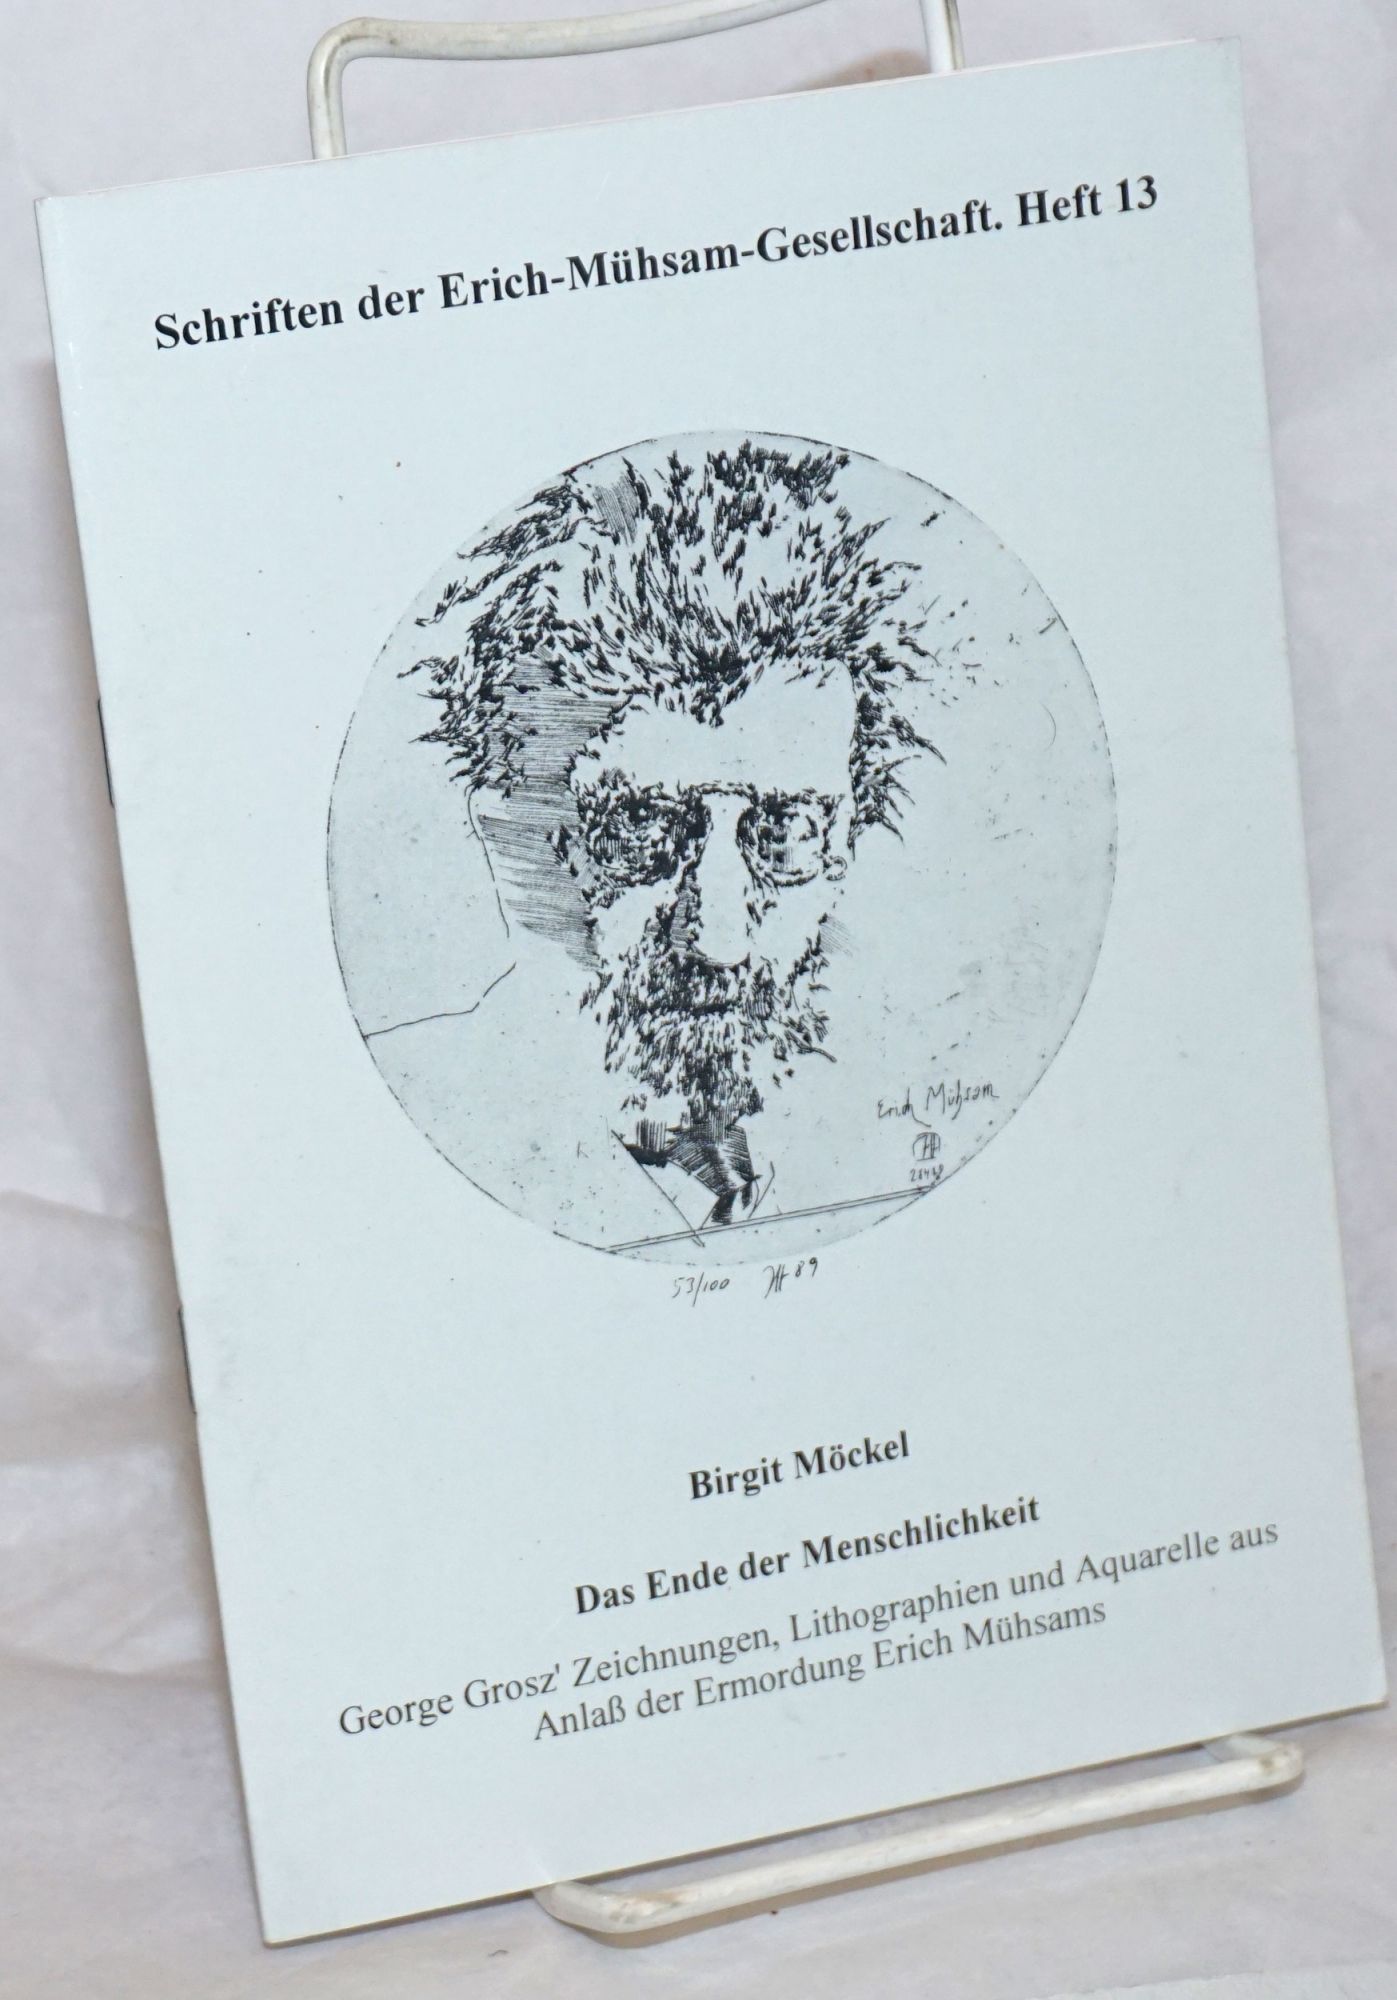 Das Ende der Menschlichkeit: George Grosz' Zeichnungen, Lithographien und Aquarelle aus Anlaß der Ermordung Erich Mühsams - Möckel, Birgit